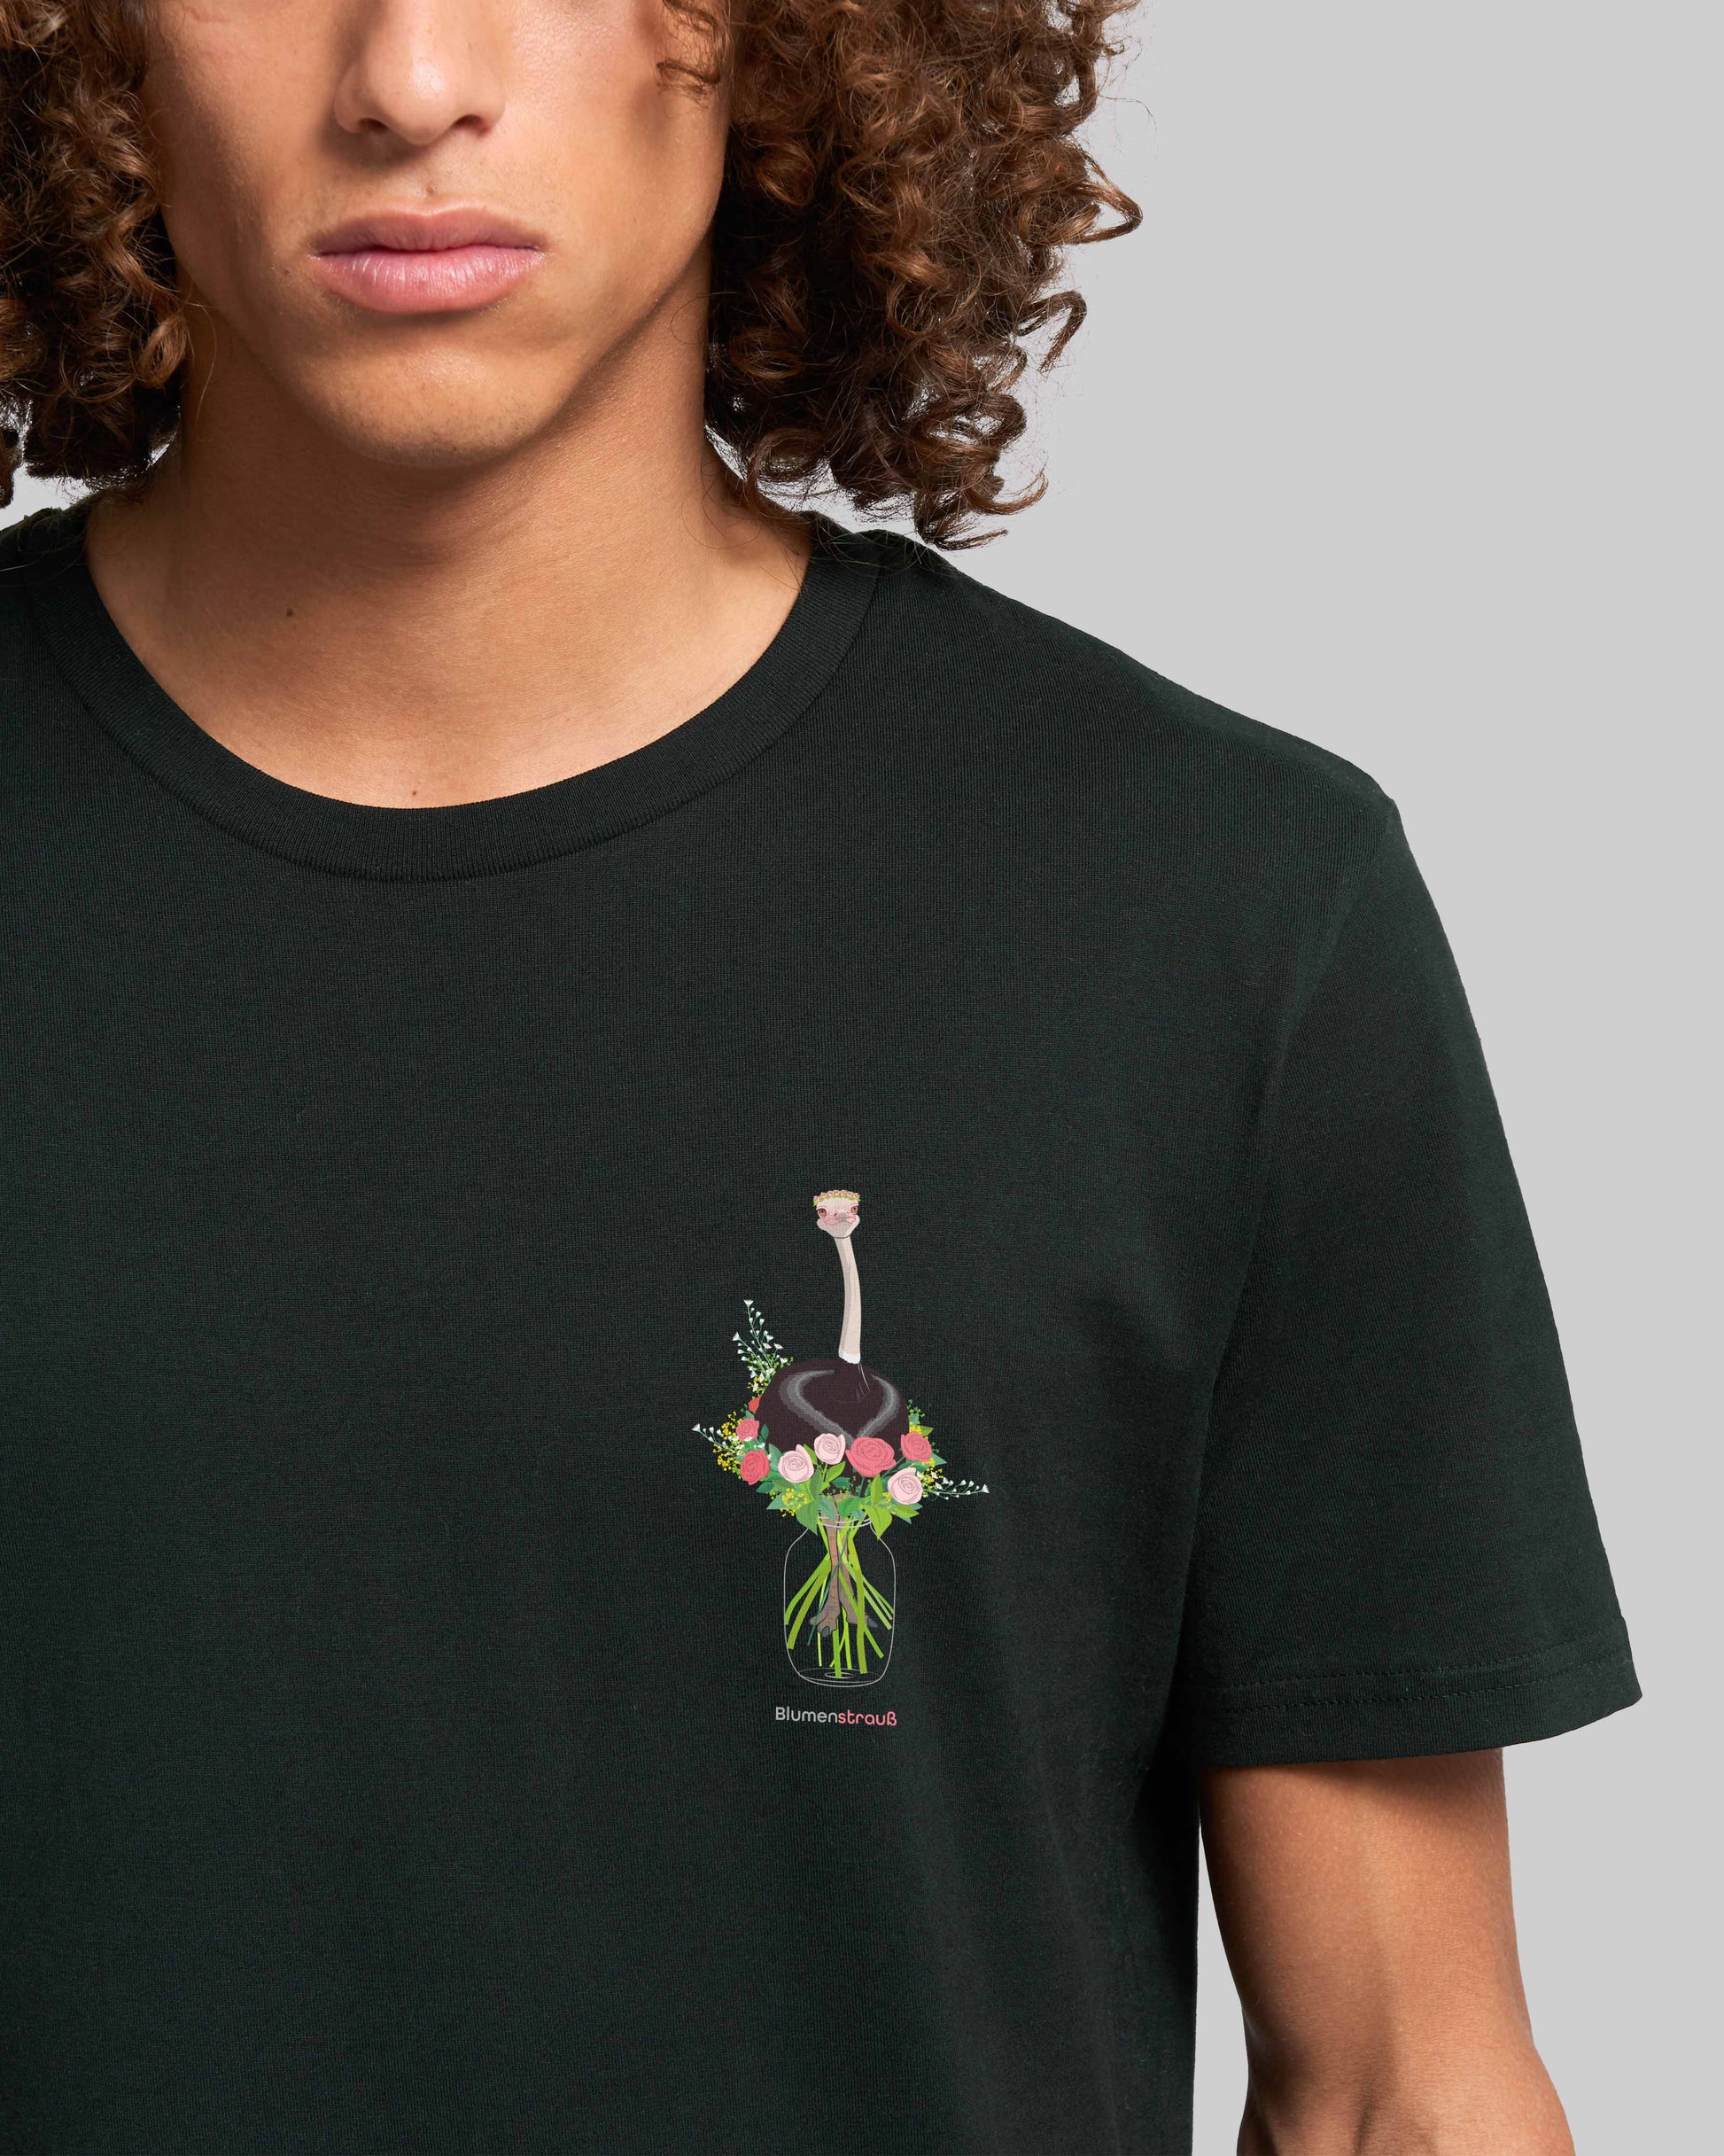 EINHORST® unisex organic Shirt in Schwarz mit dem Motiv "Blumenstrauß", Bild von männlicher Person mit Shirt